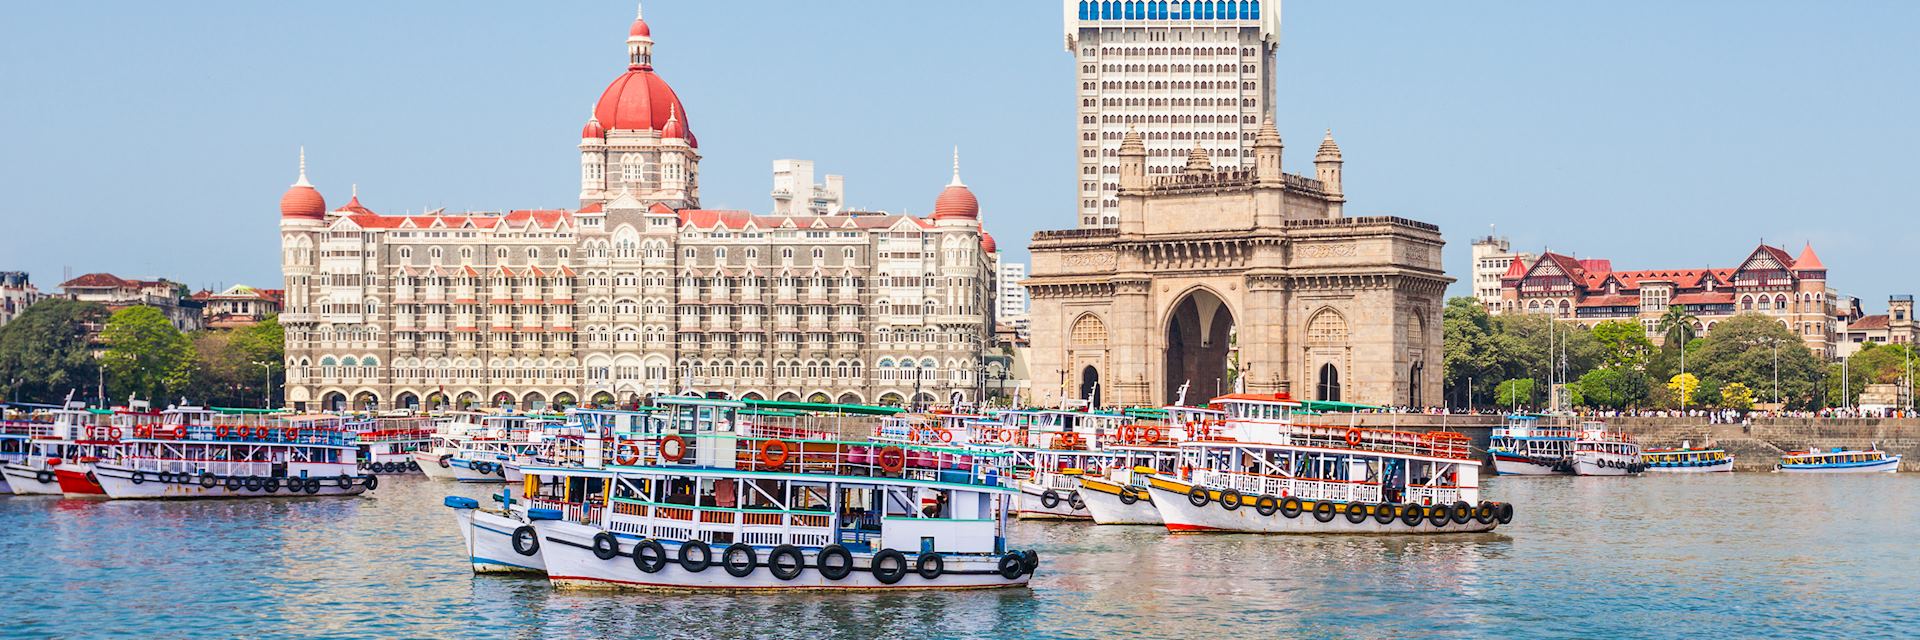 tourist places between goa and mumbai